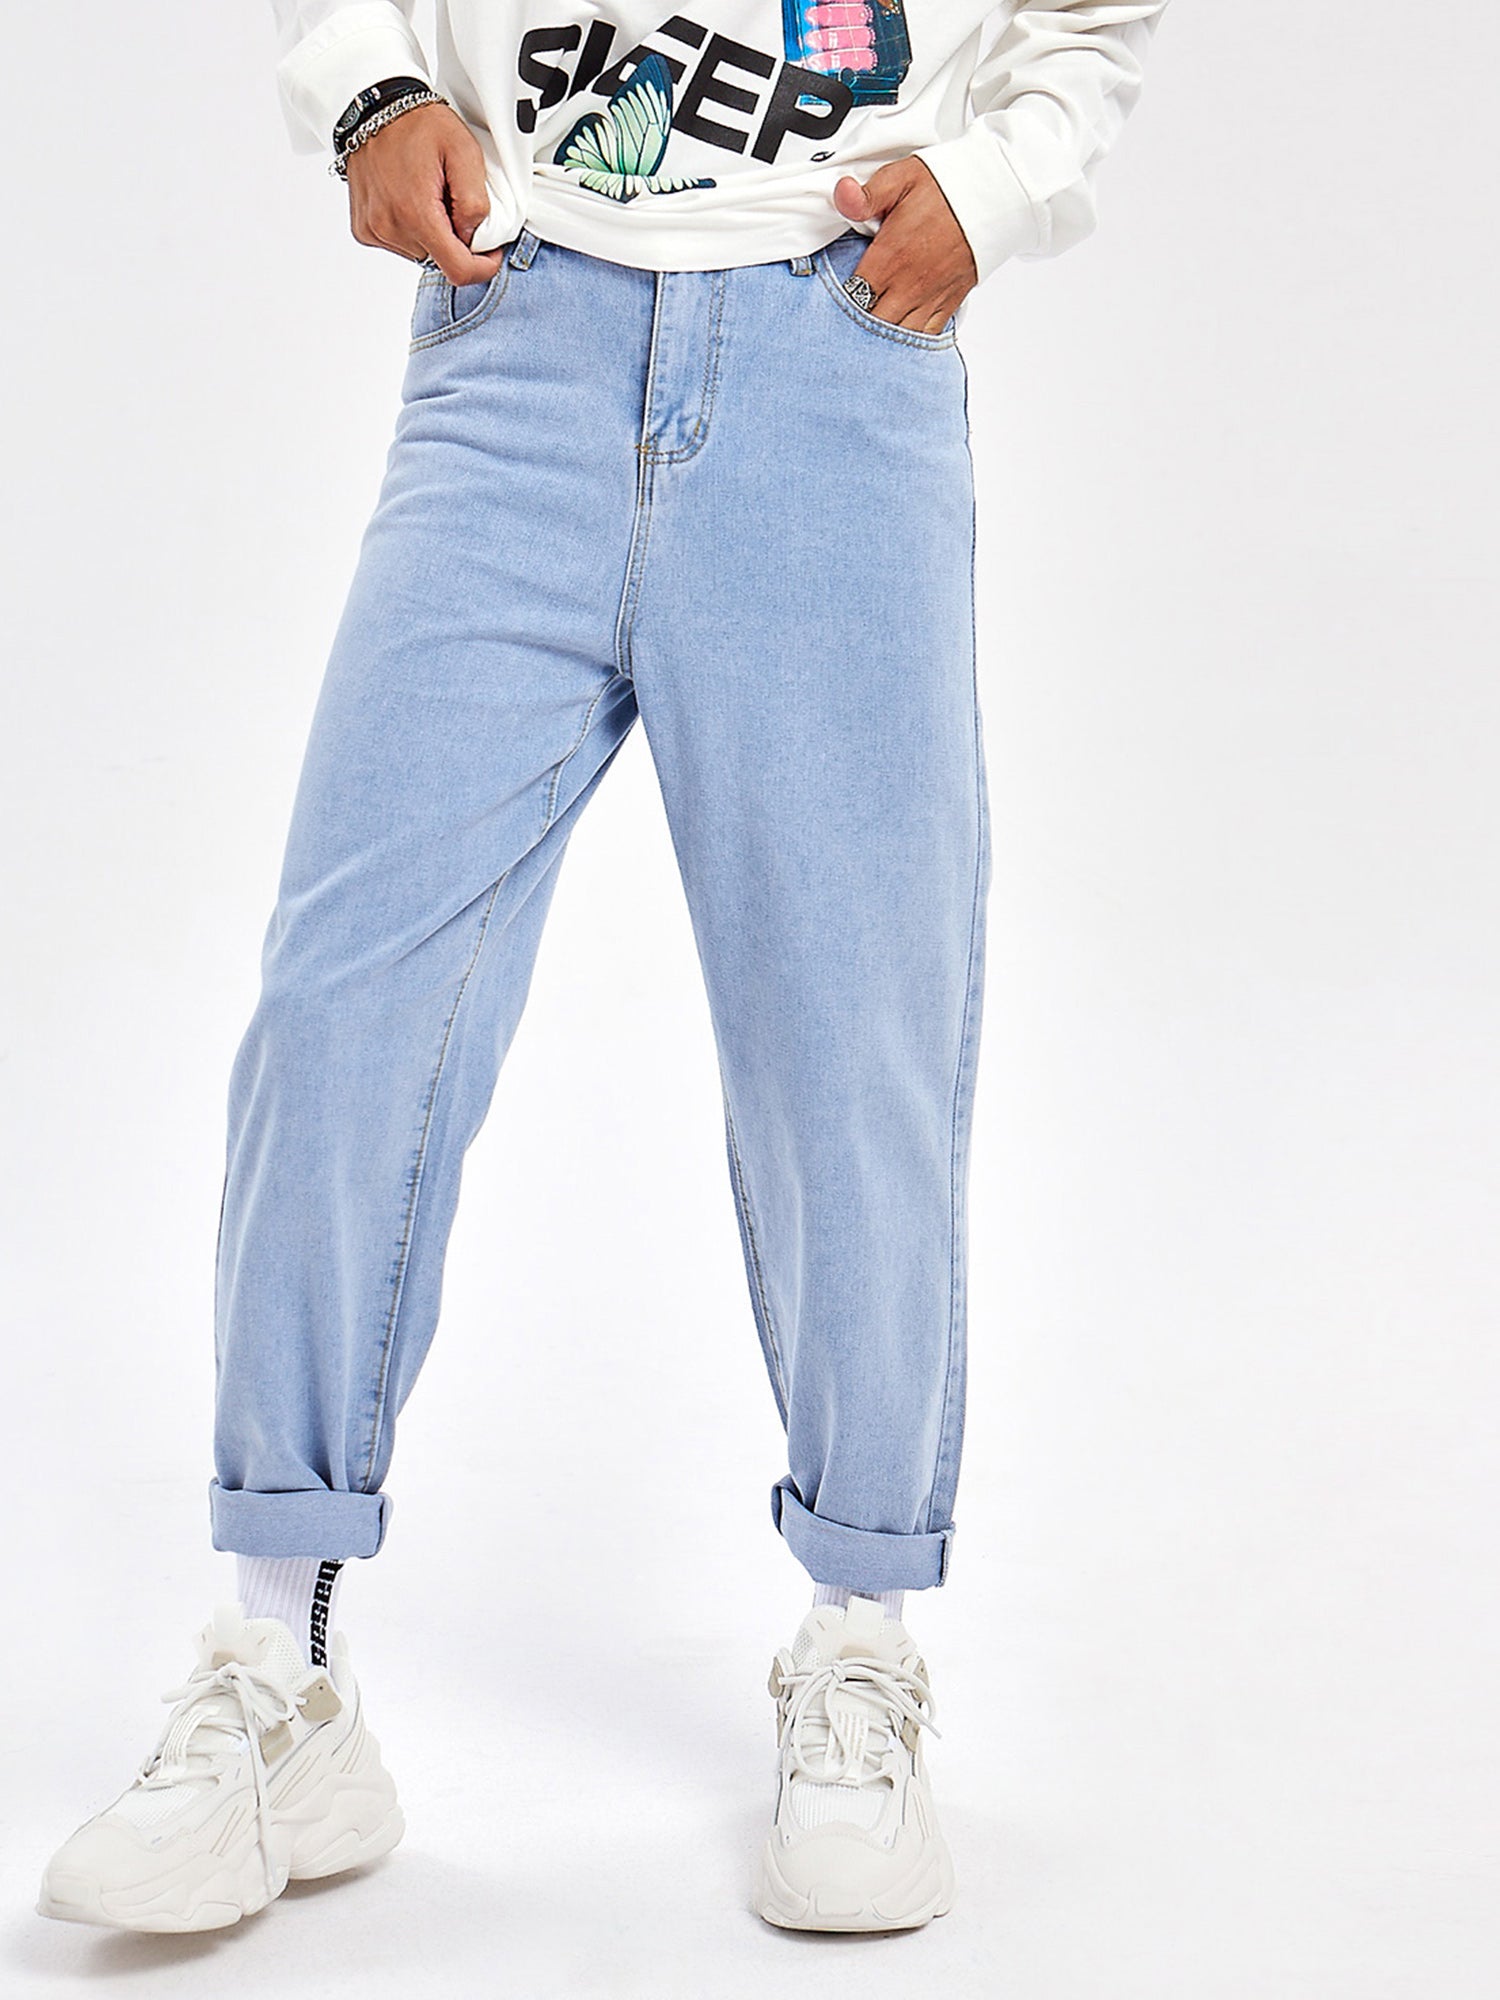 JUSTNOTAG Casual Street HipHop Print Hellblaue lange lockere Jeans